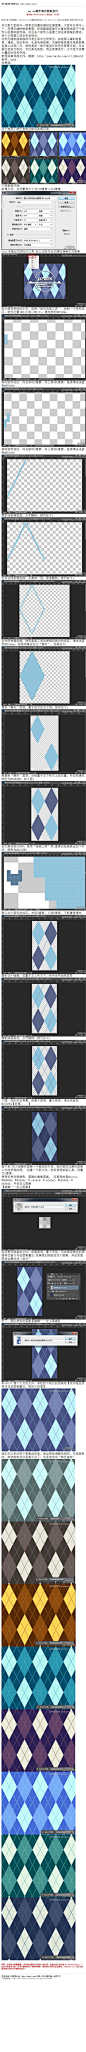 #技巧教程#《photoshop cc制作填充图案技巧》 本文教大家制作一种常见的菱形编织纹理图案。大家可以学习一下。 教程网址：http://bbs.16xx8.com/thread-167415-1-1.html